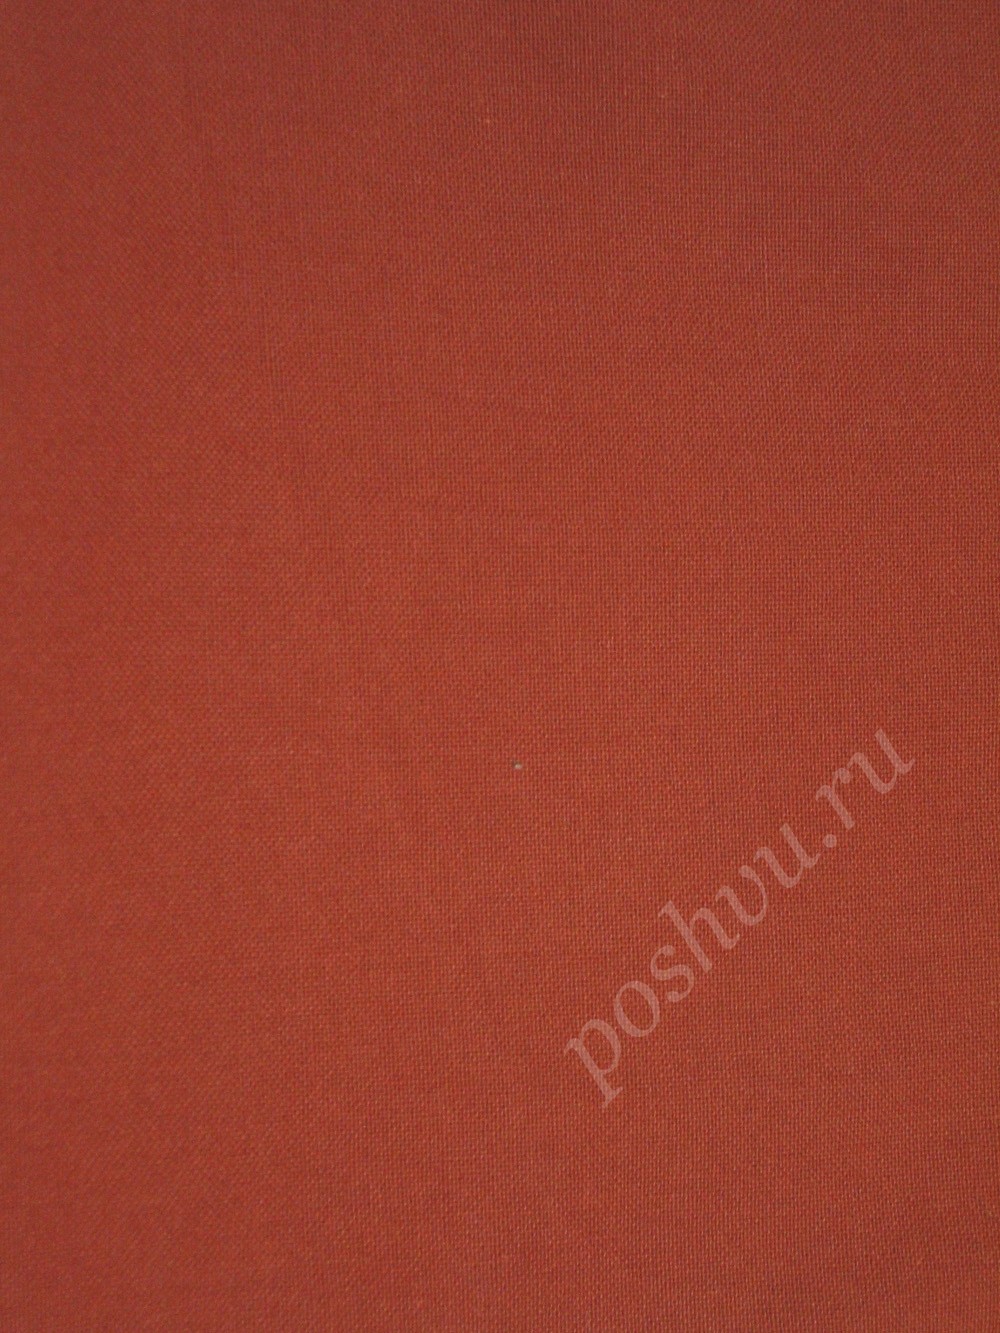 Ткань для штор портьерная, полиэстер, хлопок Panama liso 25